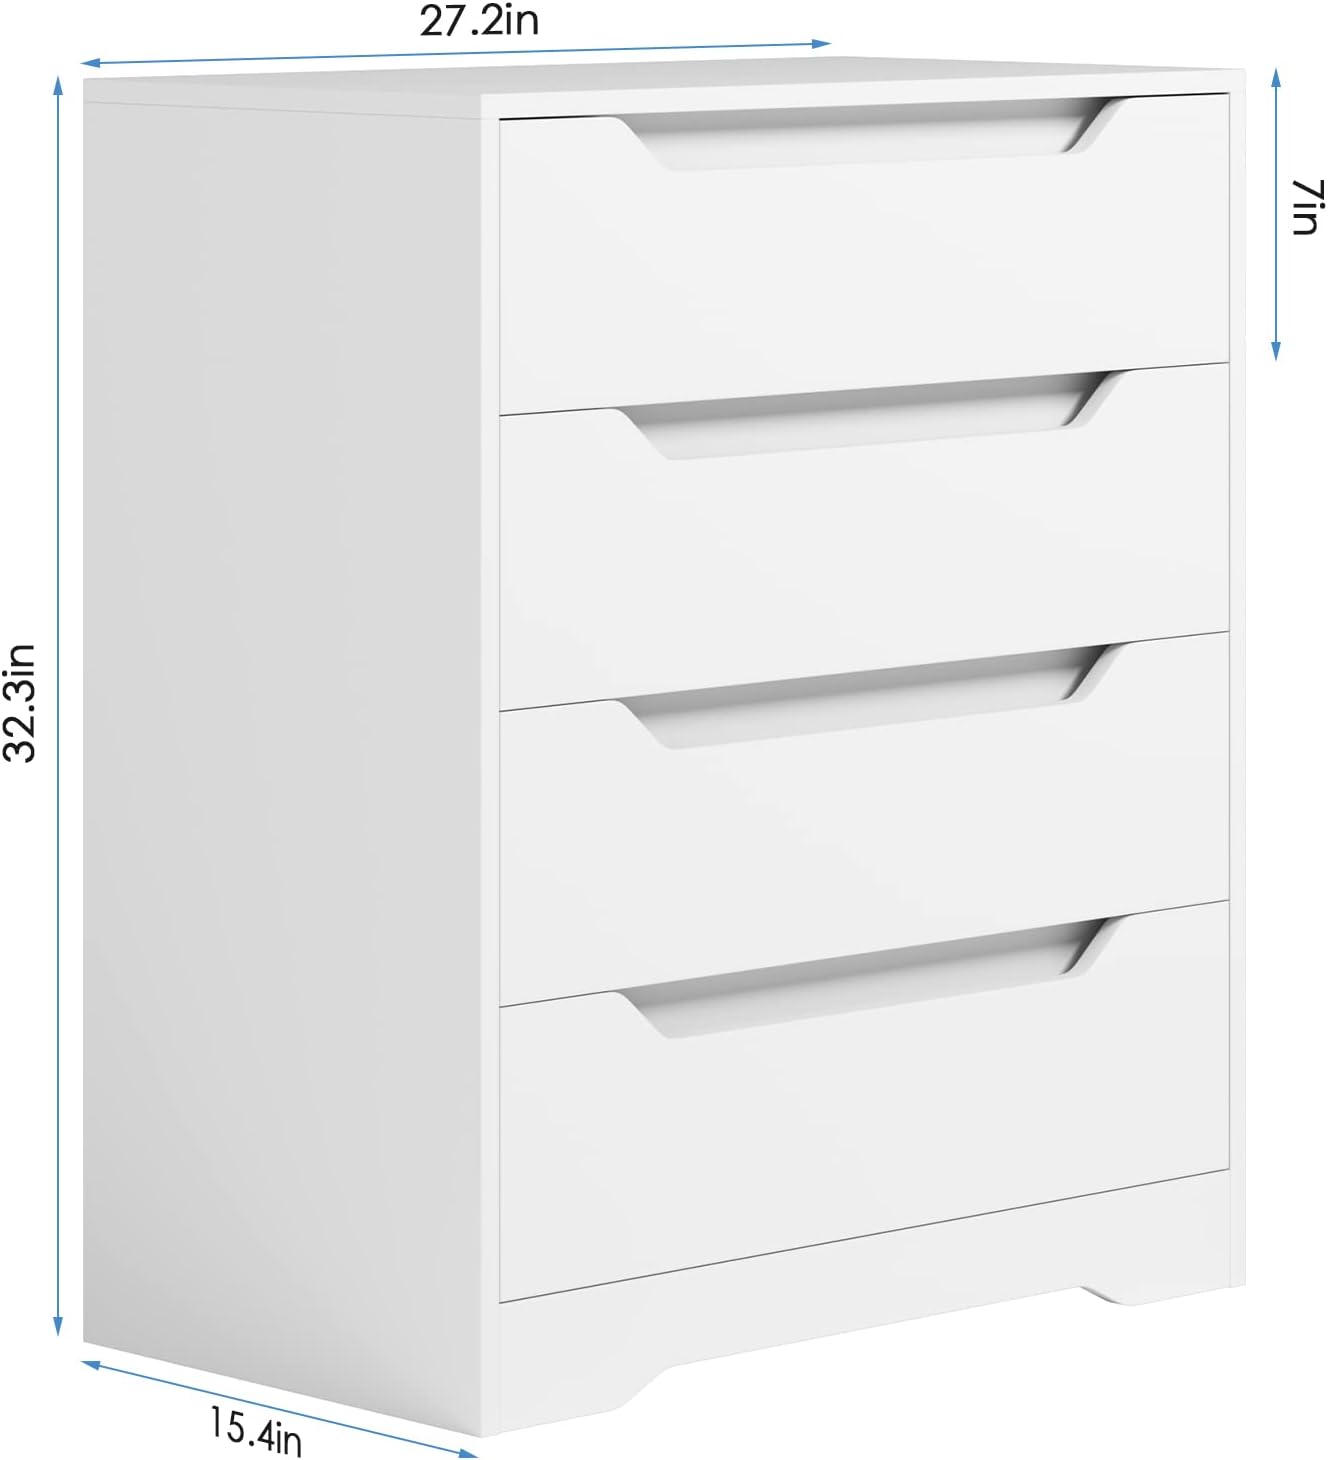 HOSTACK Modern 4 Drawer Dresser dimensions